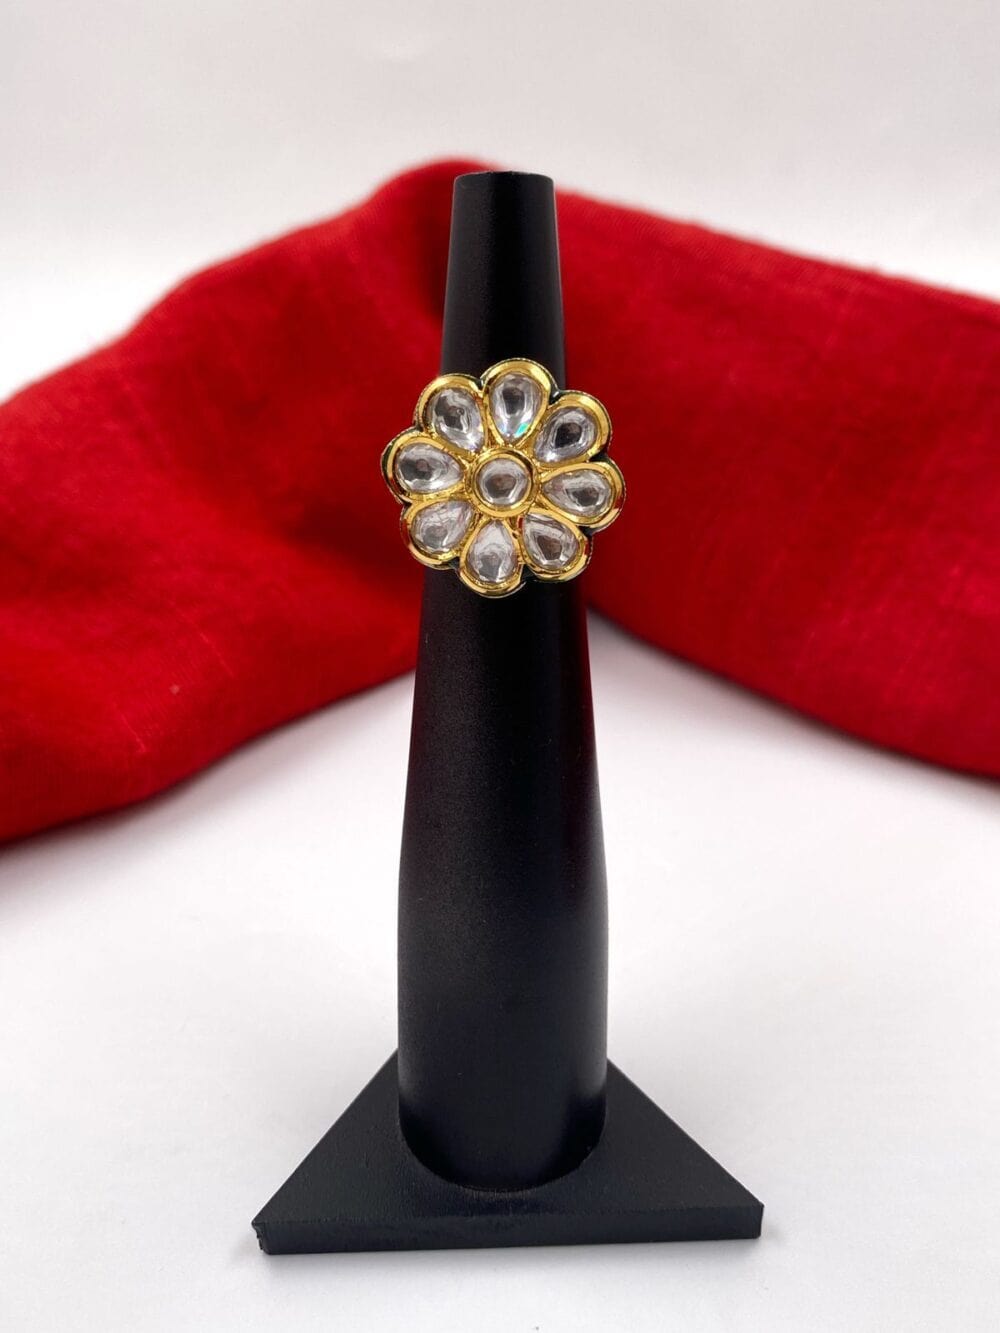 Gold Rings for Women | Women's Latest Gold Ring Design - PC Chandra